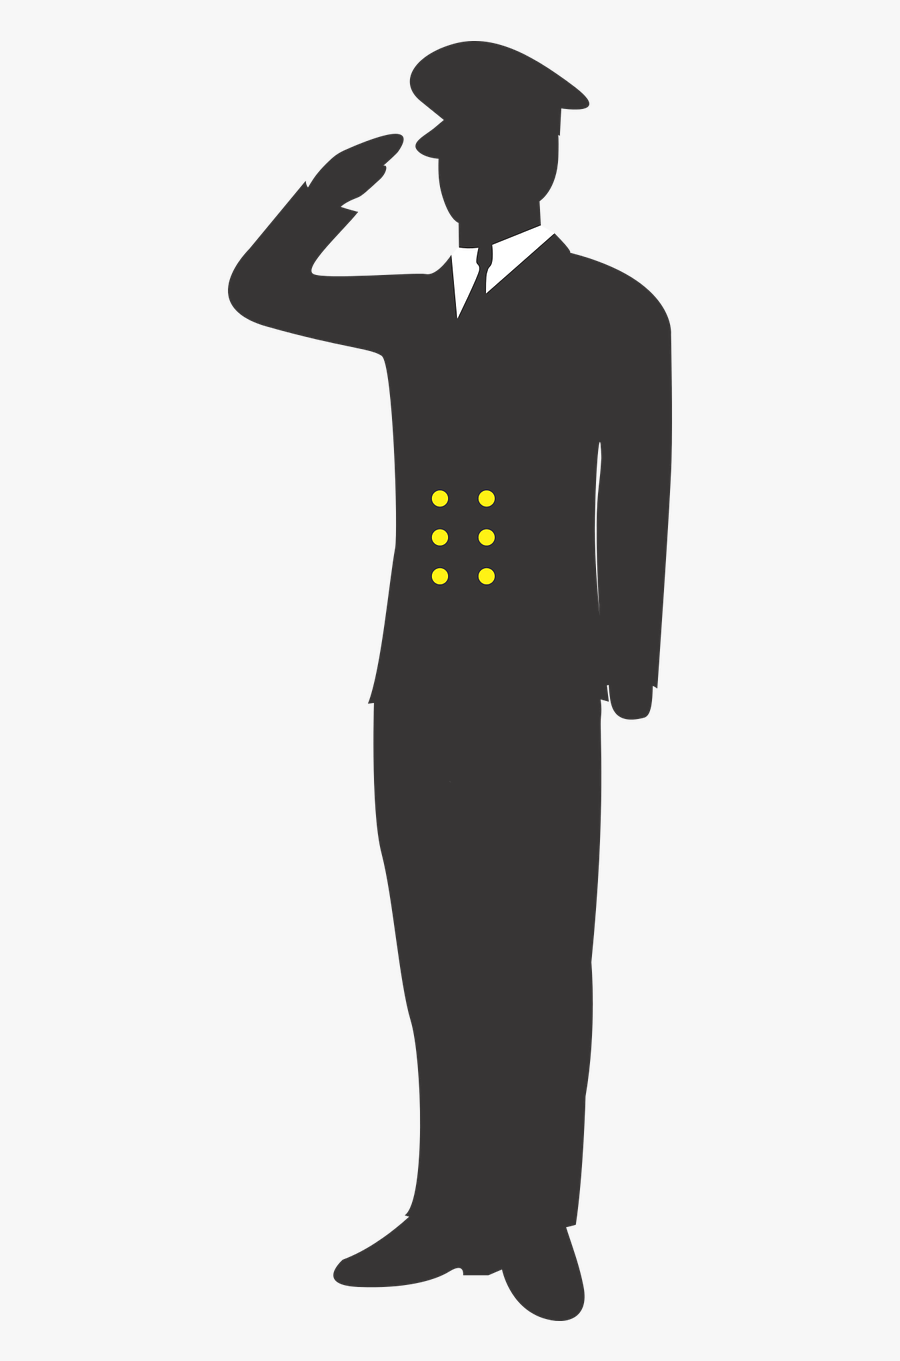 Sailor Salute Soldier Military Personnel Clip Art - Sailor Salute Png, Transparent Clipart